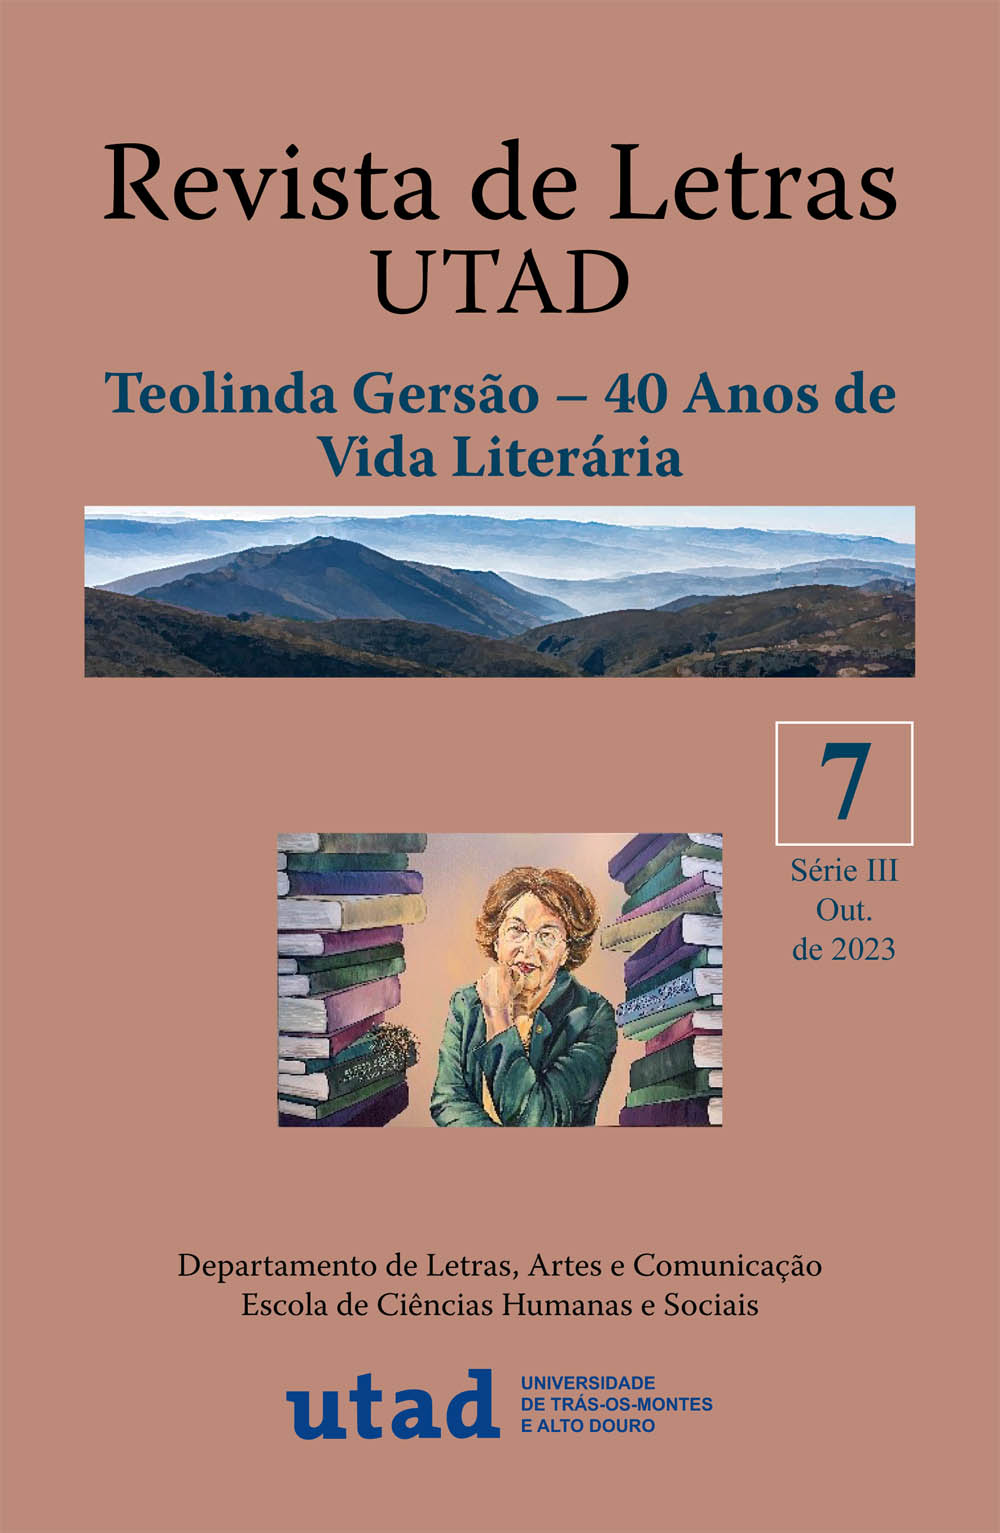 Revista de Letras UTAD / Teolinda Gersão – 40 Anos de Vida Literária